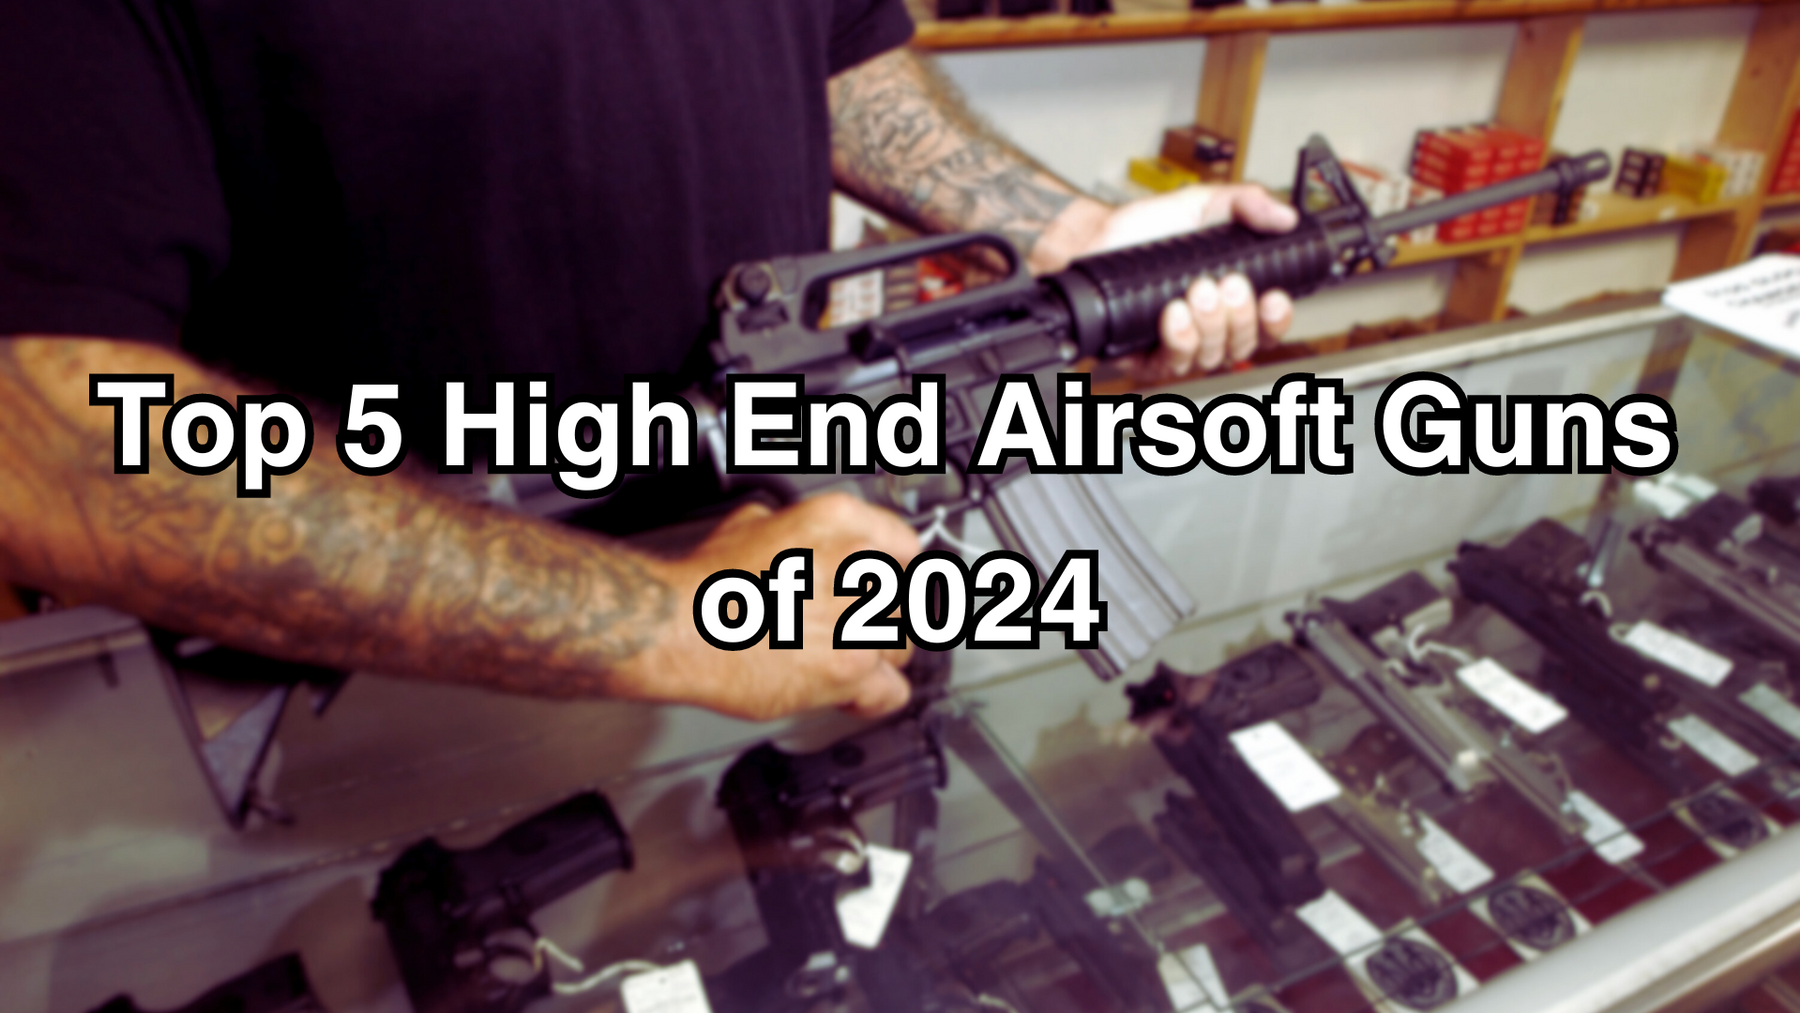 Top 5 High End Airsoft Guns of 2024